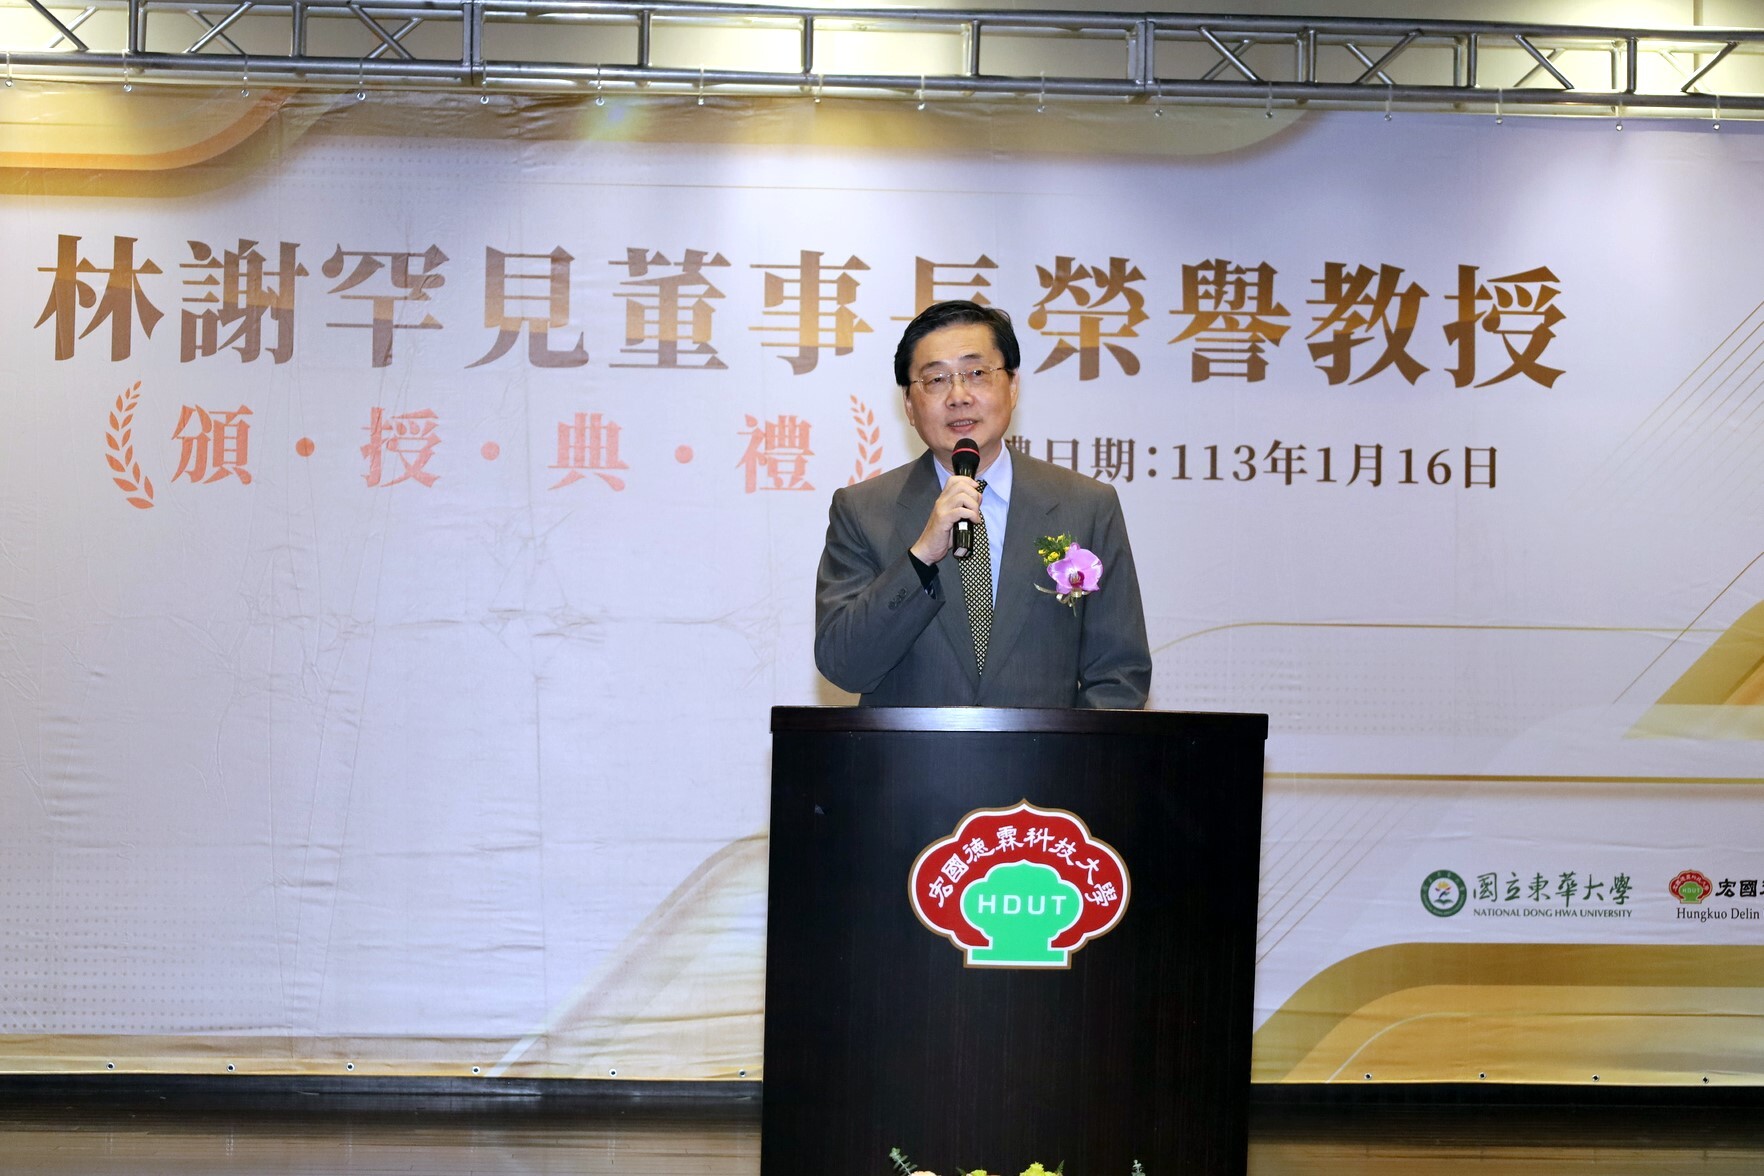 東華大學趙涵㨗校長致詞表示，林謝罕見董事長是企業界首位獲頒東華大學榮譽教授榮銜